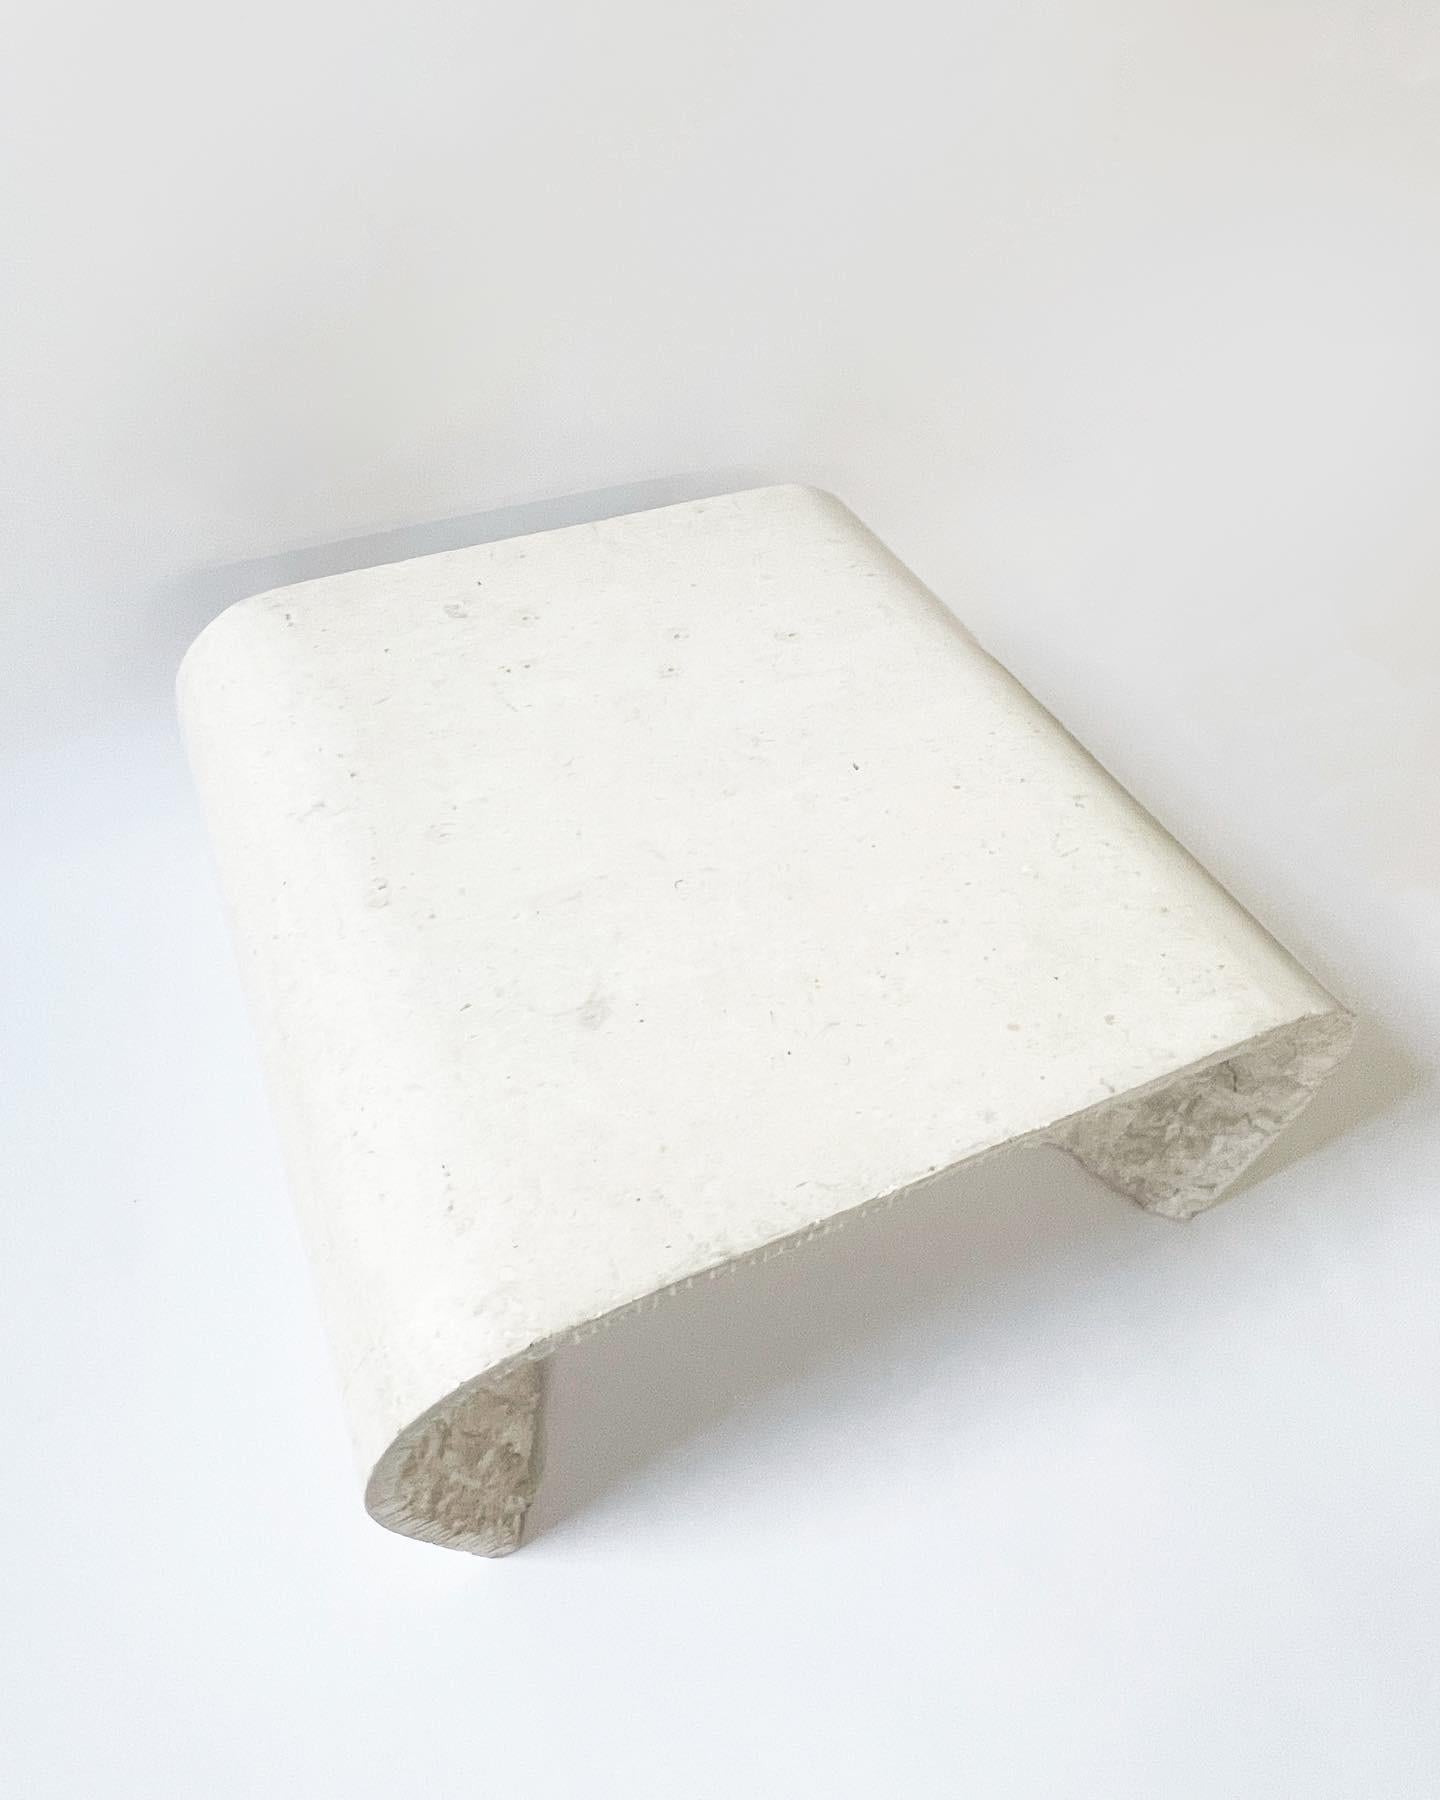 Magnifique table basse en pierre de travertin tessellée en forme de cascade moderne. Quelques traces d'usure en surface et en dessous comme sur la photo, mais globalement en très bon état pour son âge.